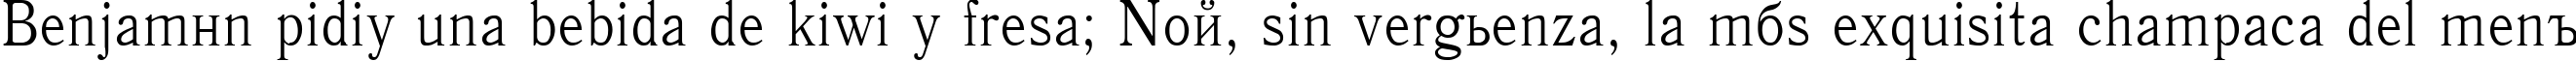 Пример написания шрифтом Antiqua90n текста на испанском